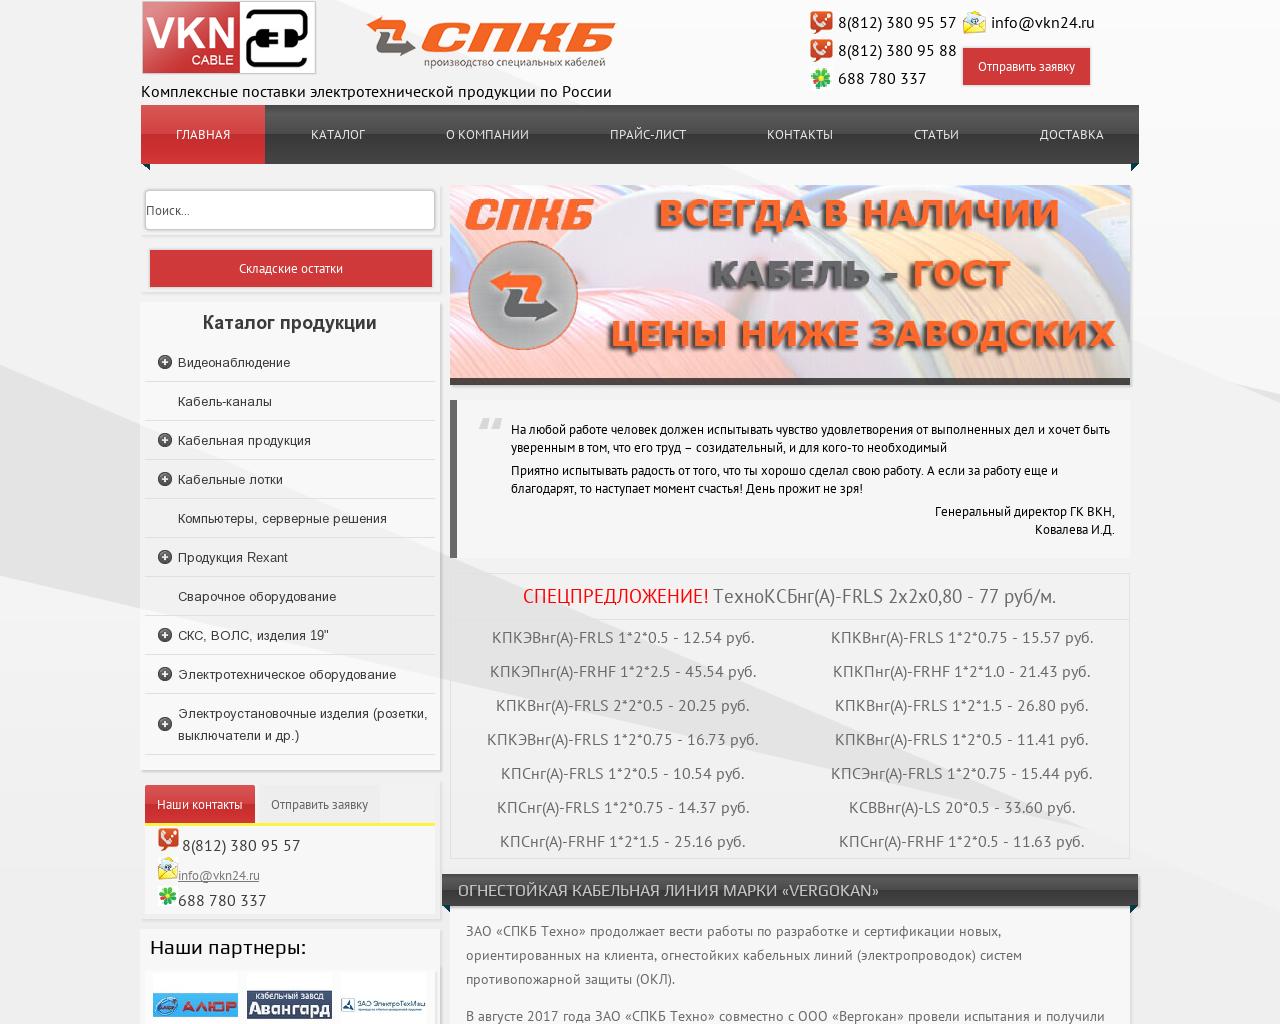 Изображение сайта vkn24.ru в разрешении 1280x1024